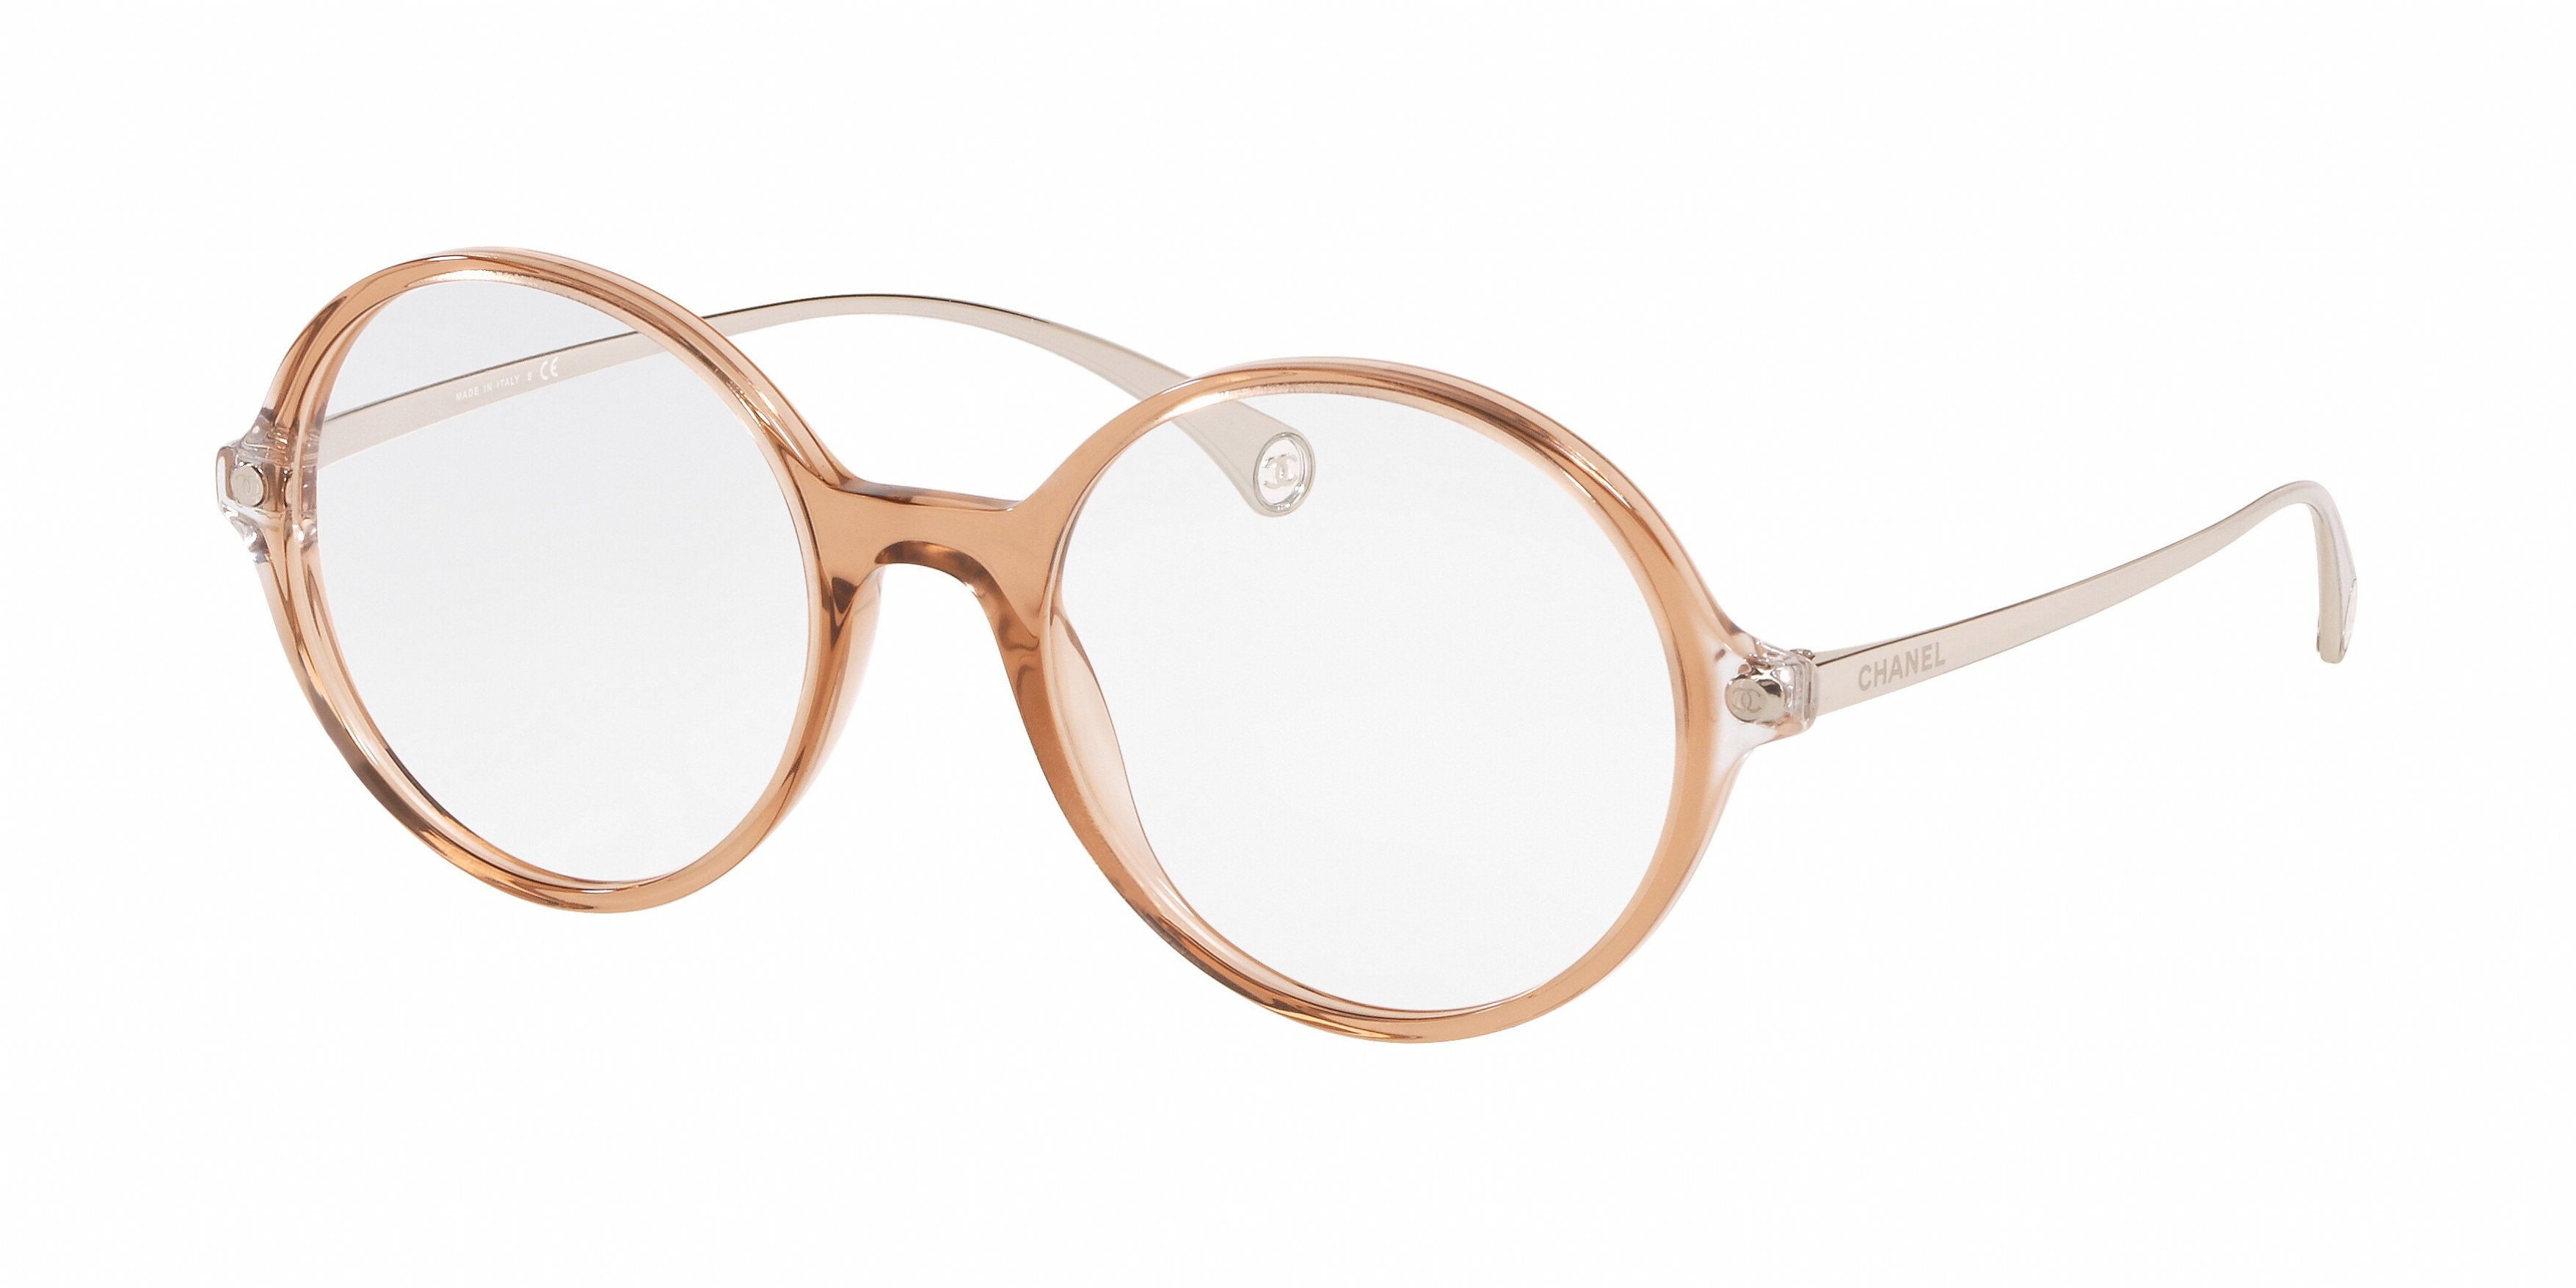 Chanel 3293b Eyeglasses